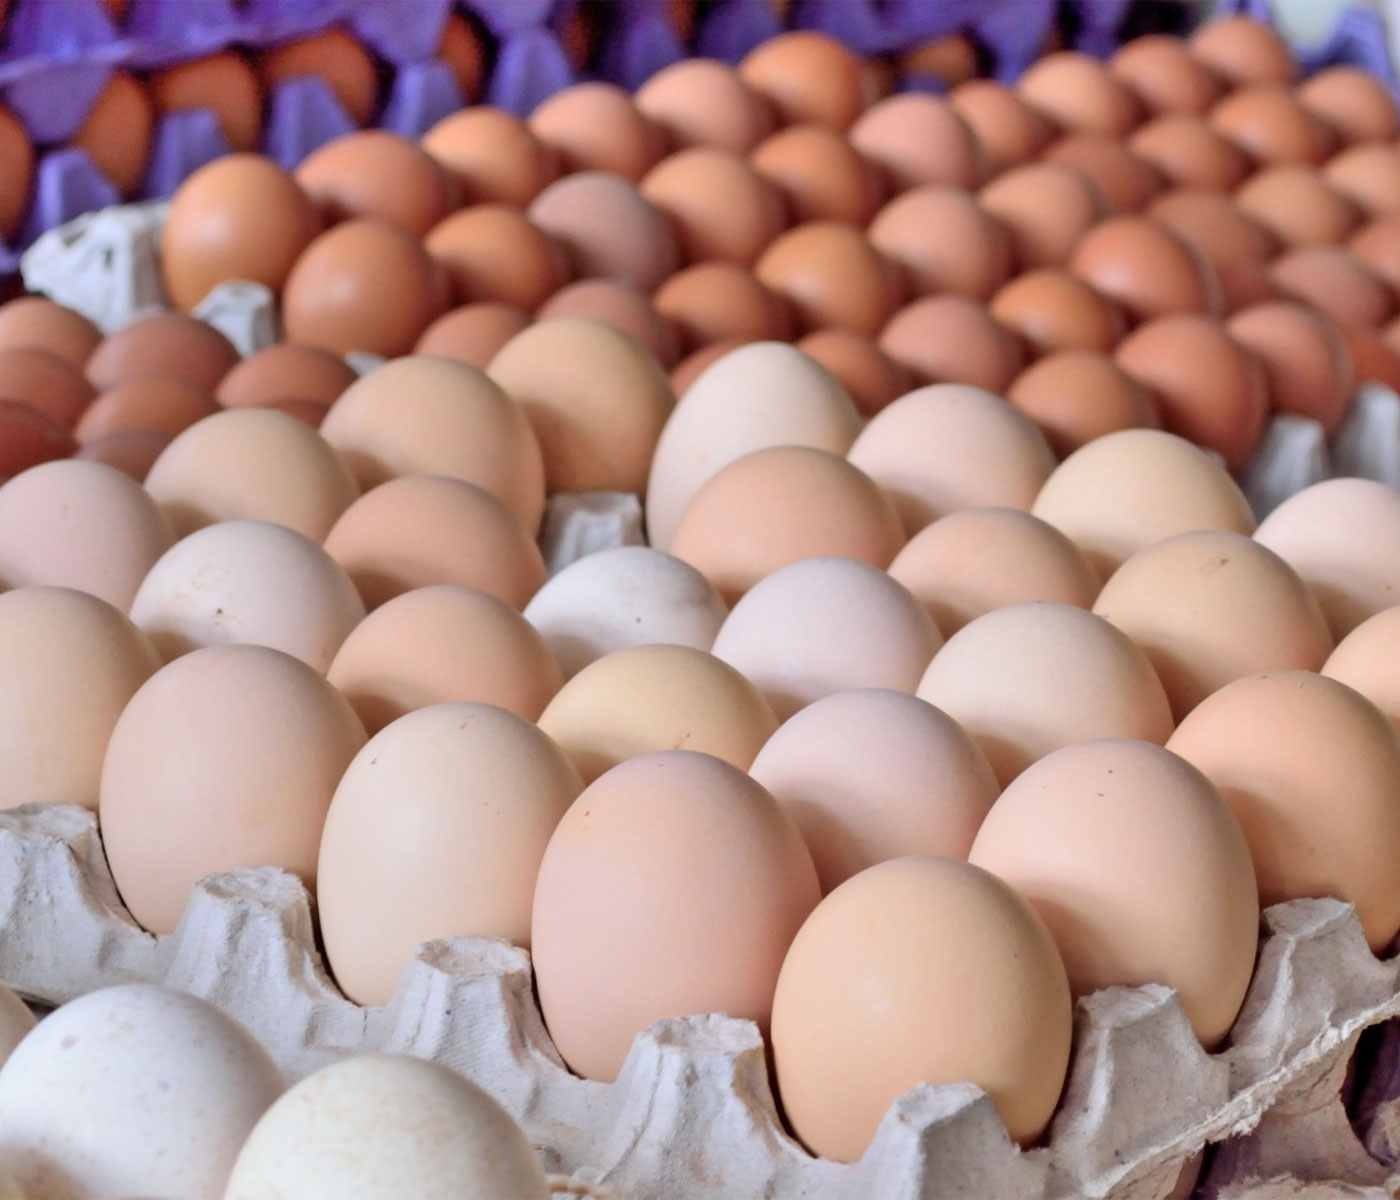 Consulta pública de la comisión de la UE sobre los cambios en la comercialización de huevos